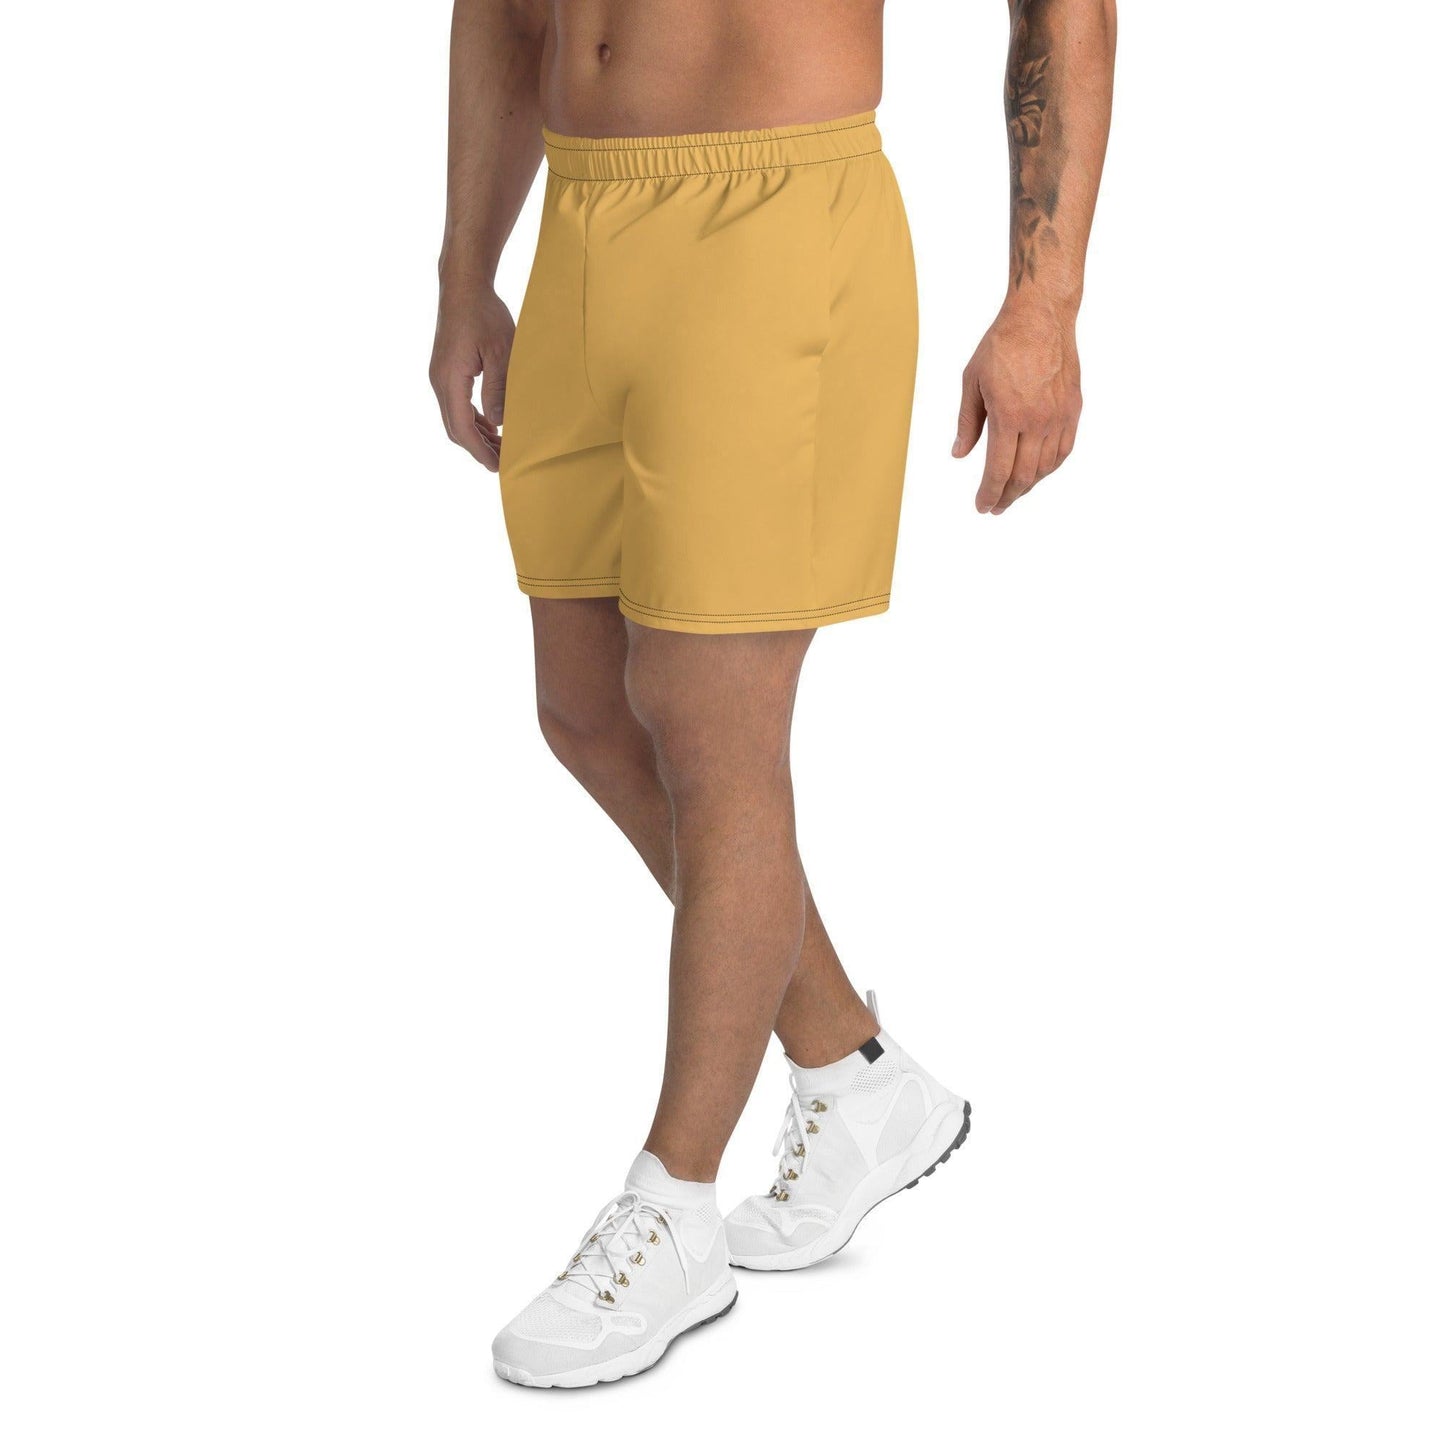 Harvest Gold Herren Sport Shorts -- Harvest Gold Herren Sport Shorts - undefined Sport Shorts | JLR Design